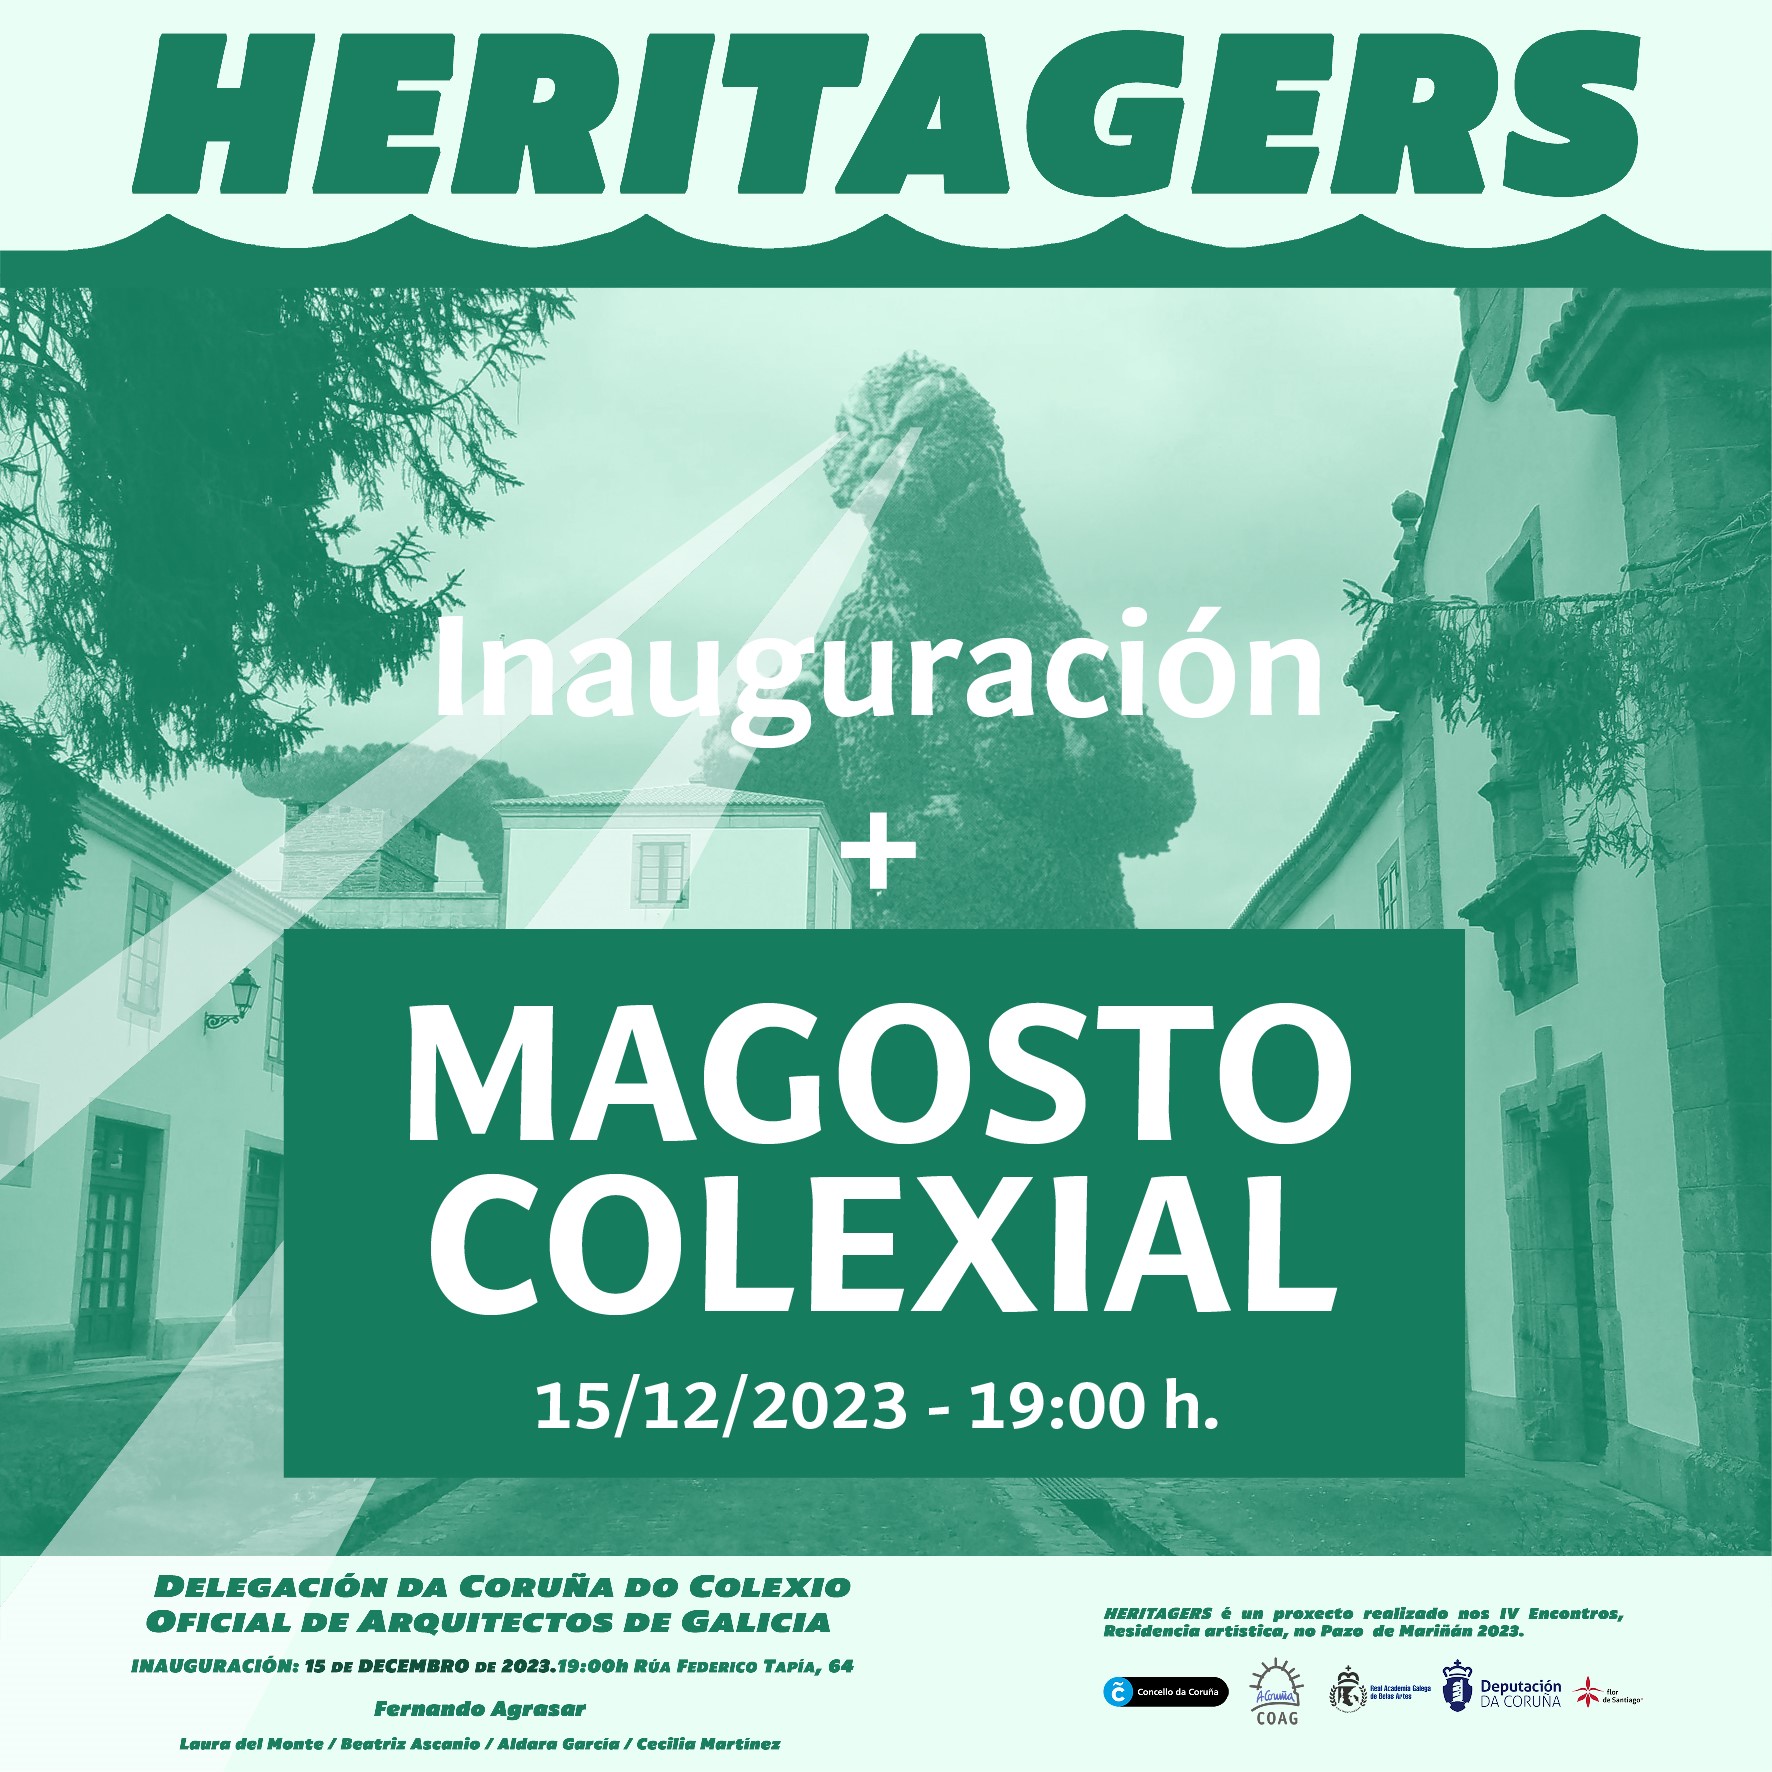 Exposición Heritagers + Magosto colexial